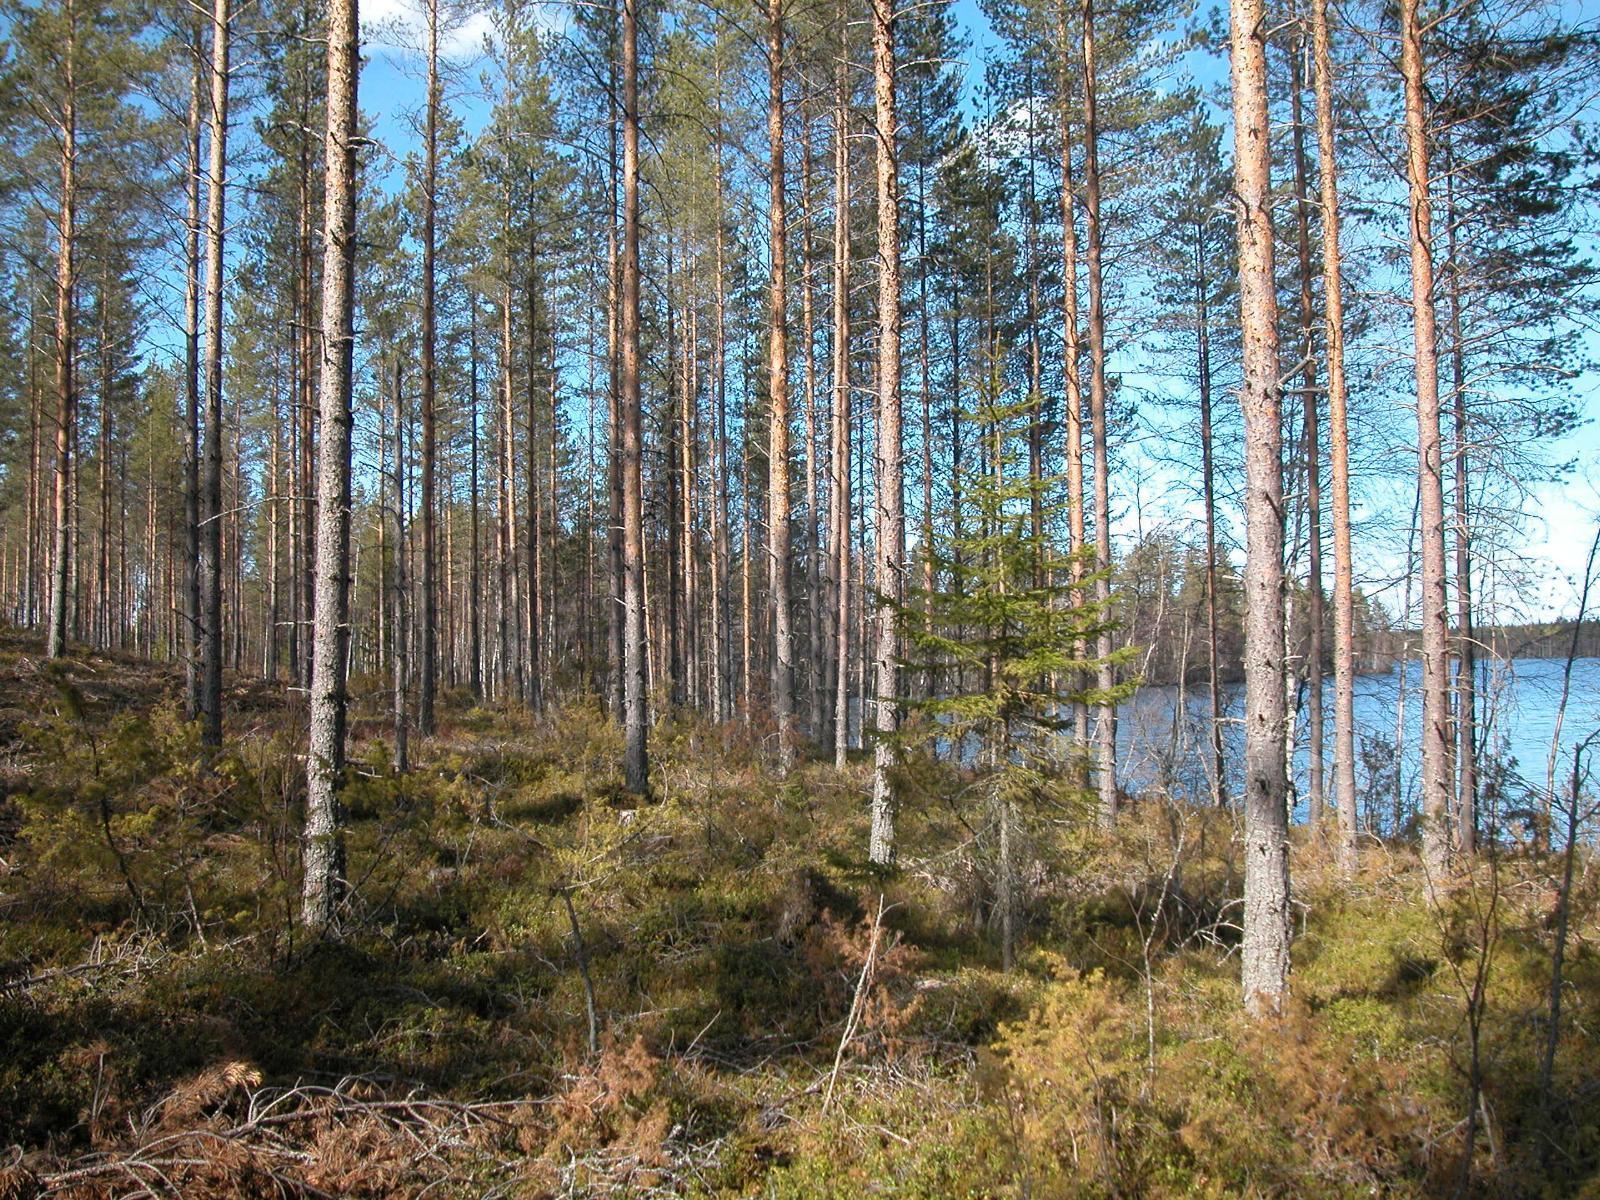 Aurinkoisessa mäntyvaltaisessa metsässä on ruskan sävyjä. Oikealla puiden lomasta häämöttää järvi.